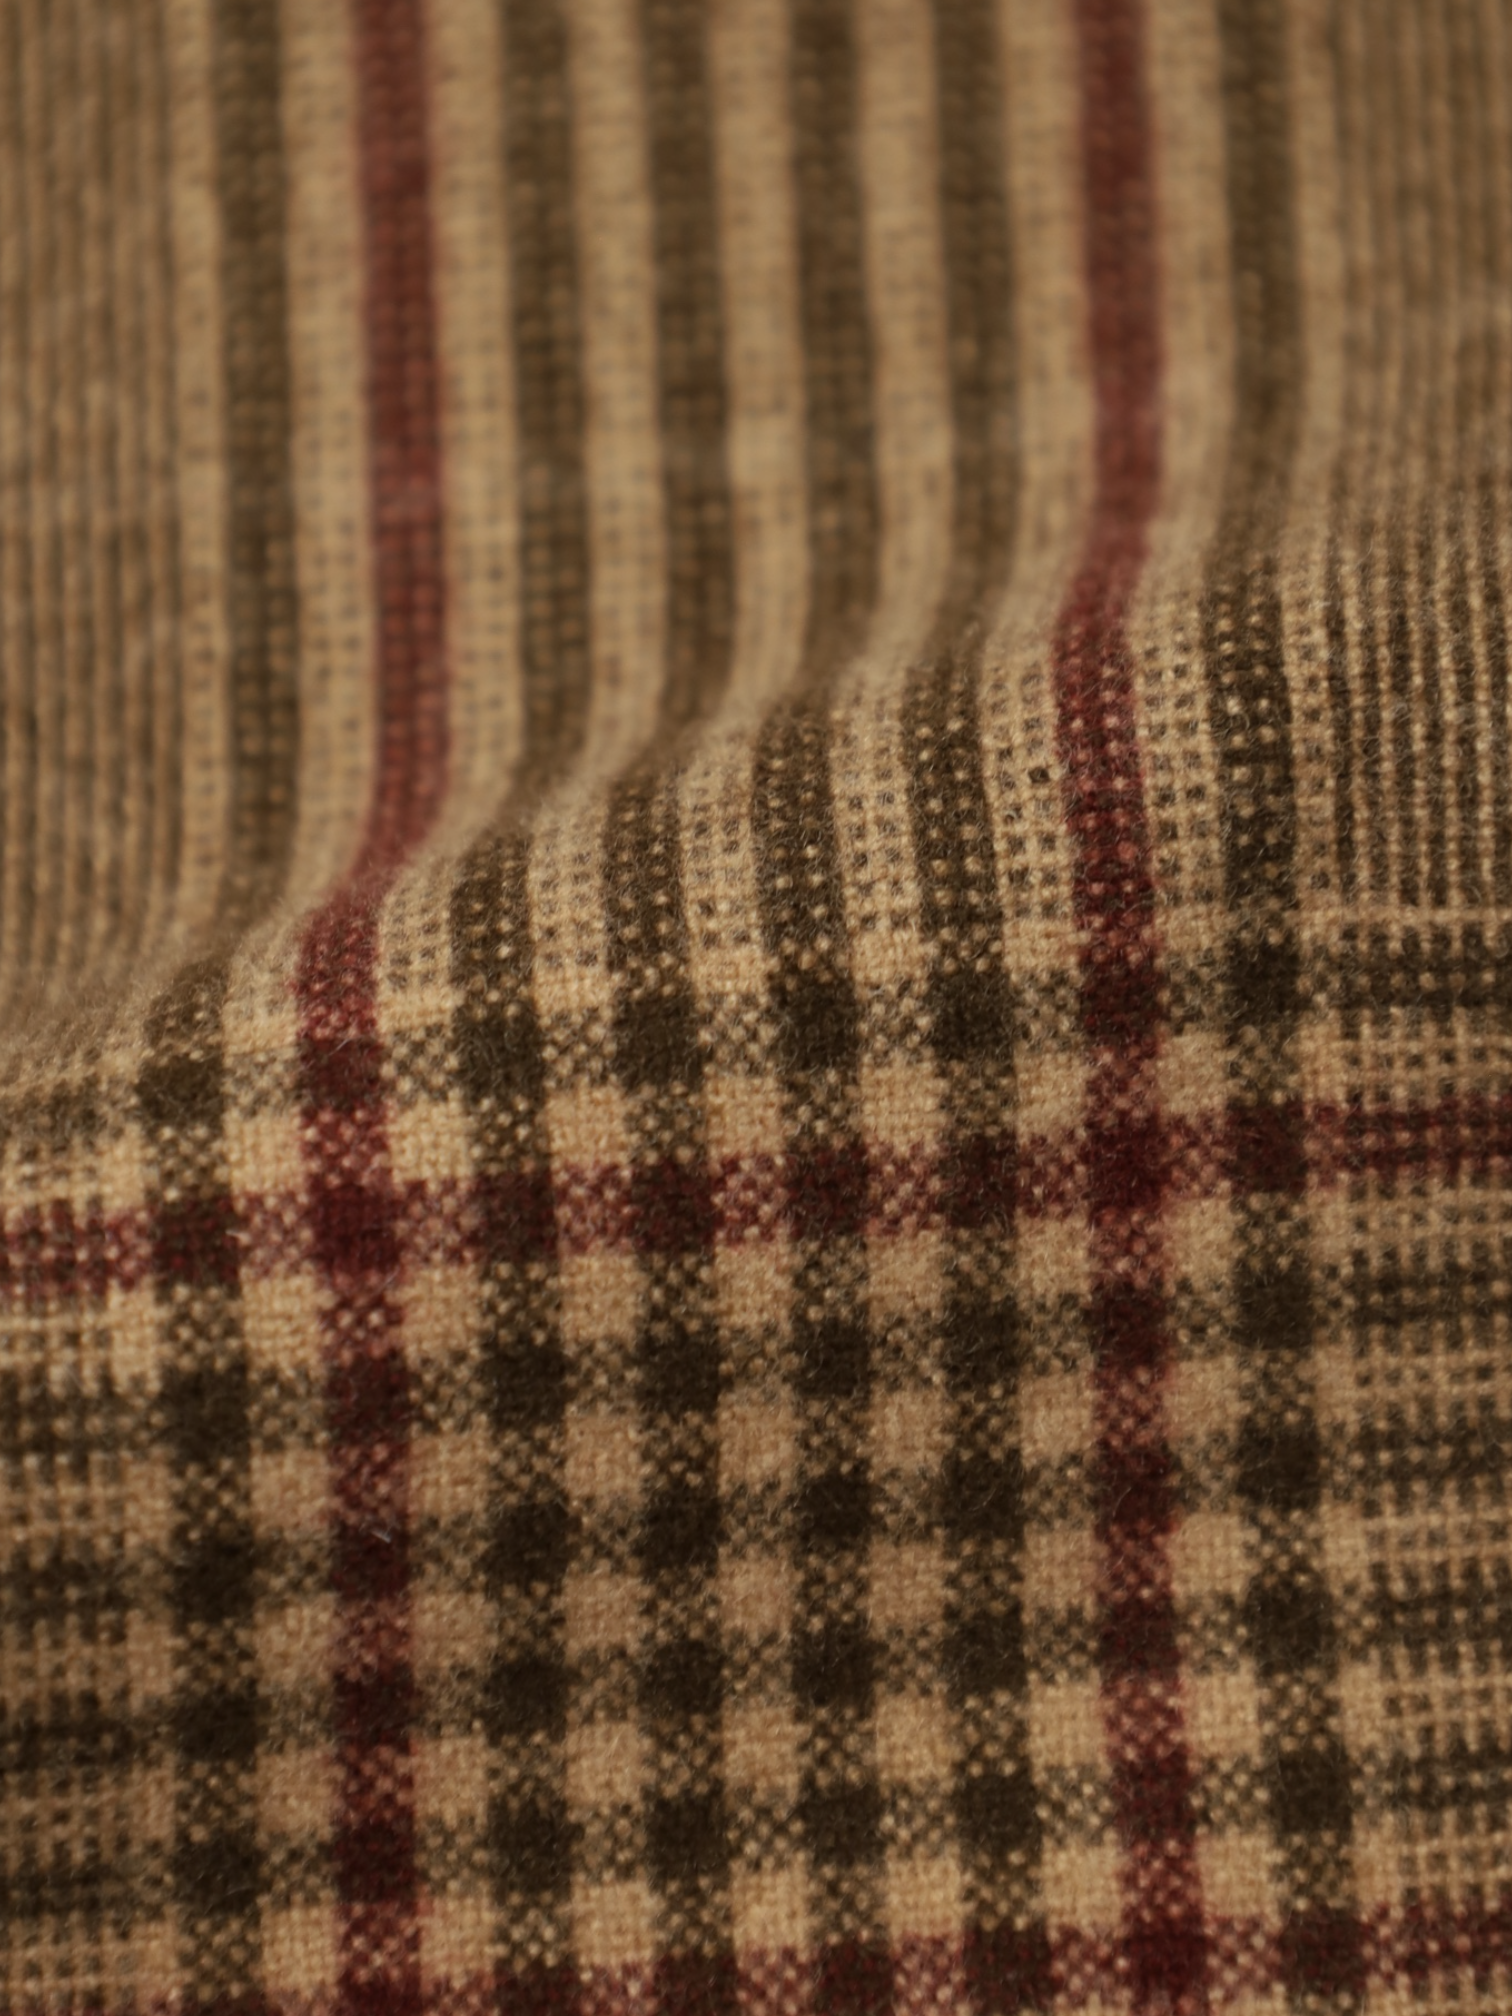 Brunello Cucinelli Light Brown Wool & Cashmere Glenplaid Jacket